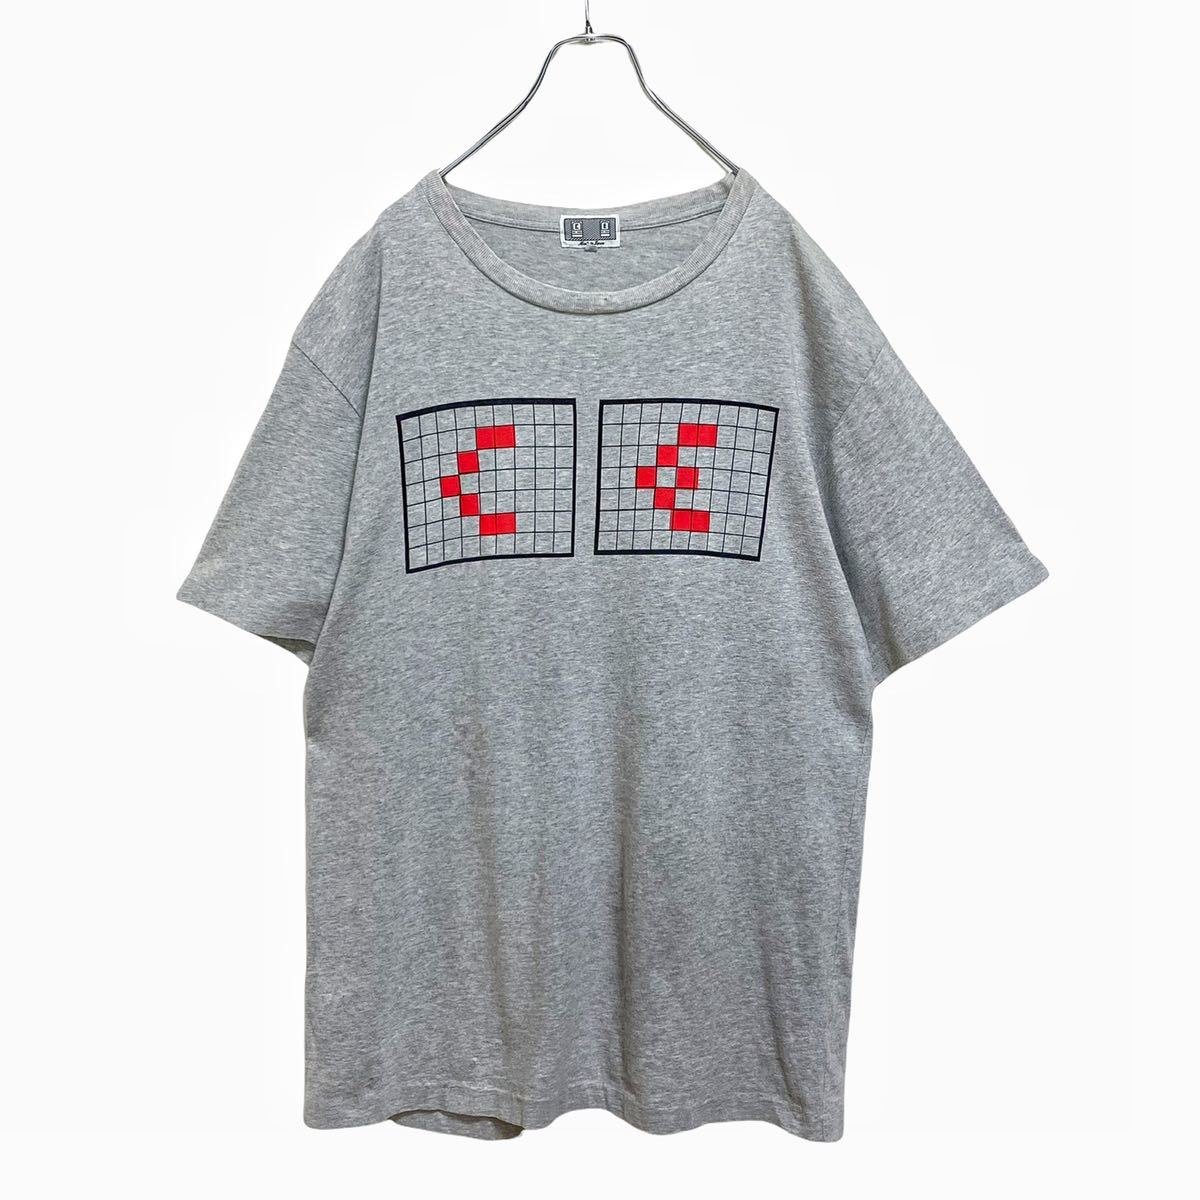 【廃盤】CE シーイー ロゴ グラフィック Tシャツ メンズ XL 古着 グレー C.E cavempt キャブエンプト 3D ゲーム レトロ  スケシン ドット絵